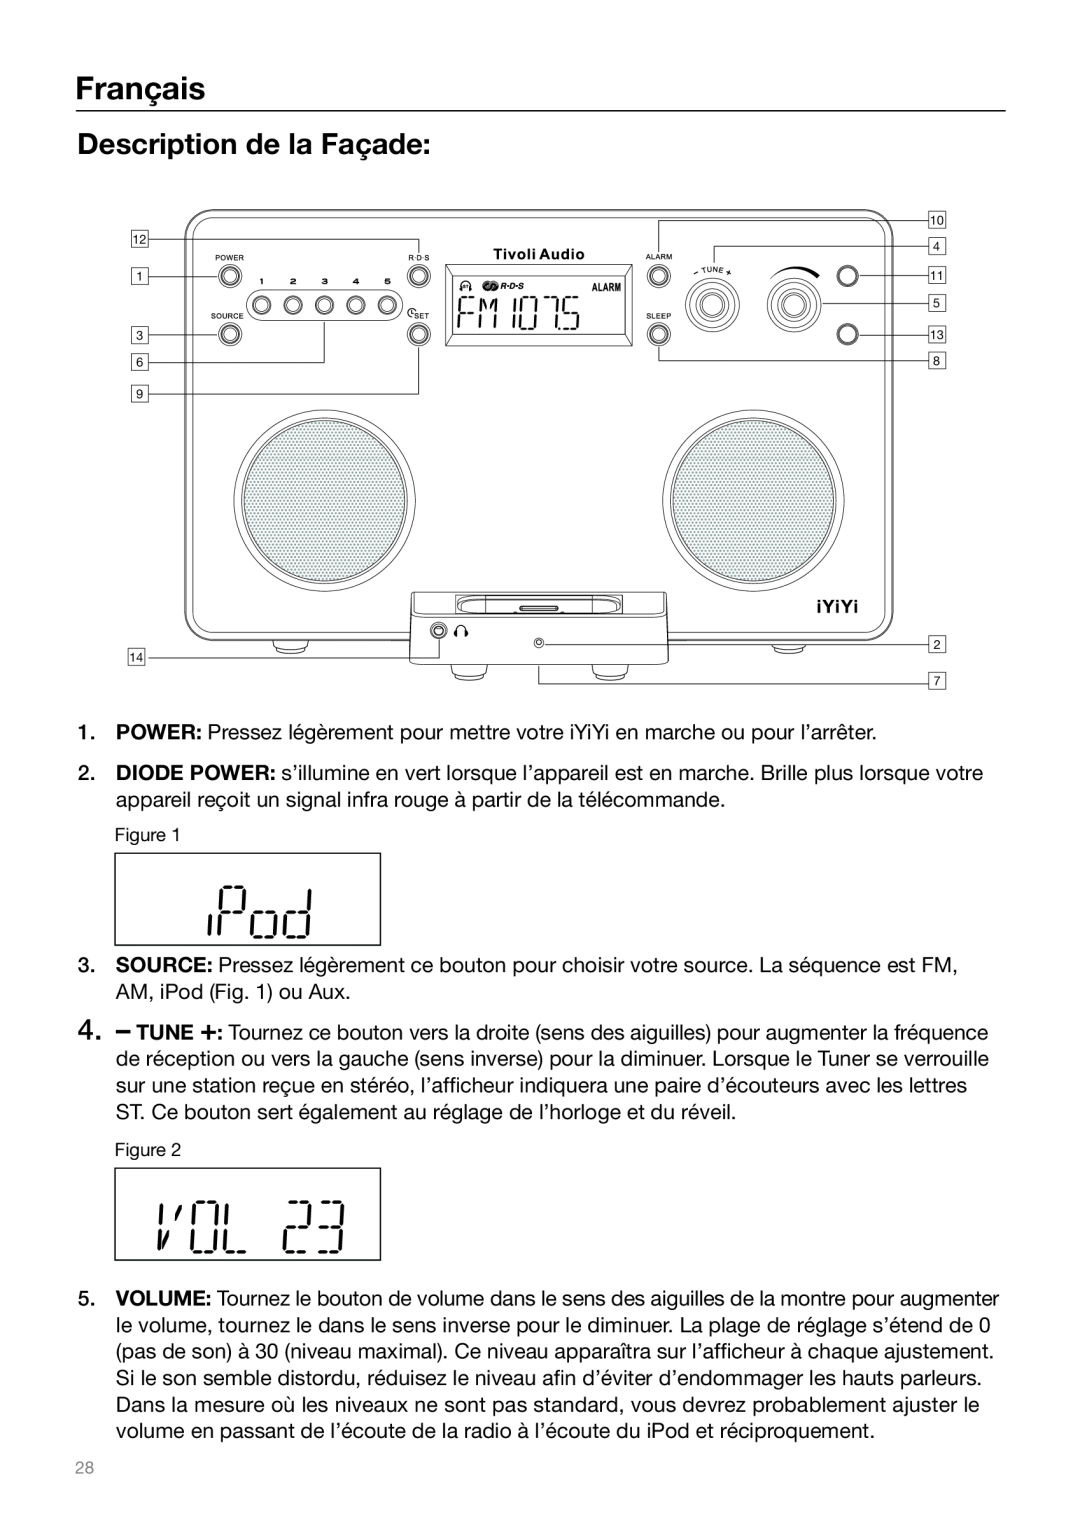 Tivoli Audio Sound System owner manual Description de la Façade, Français 